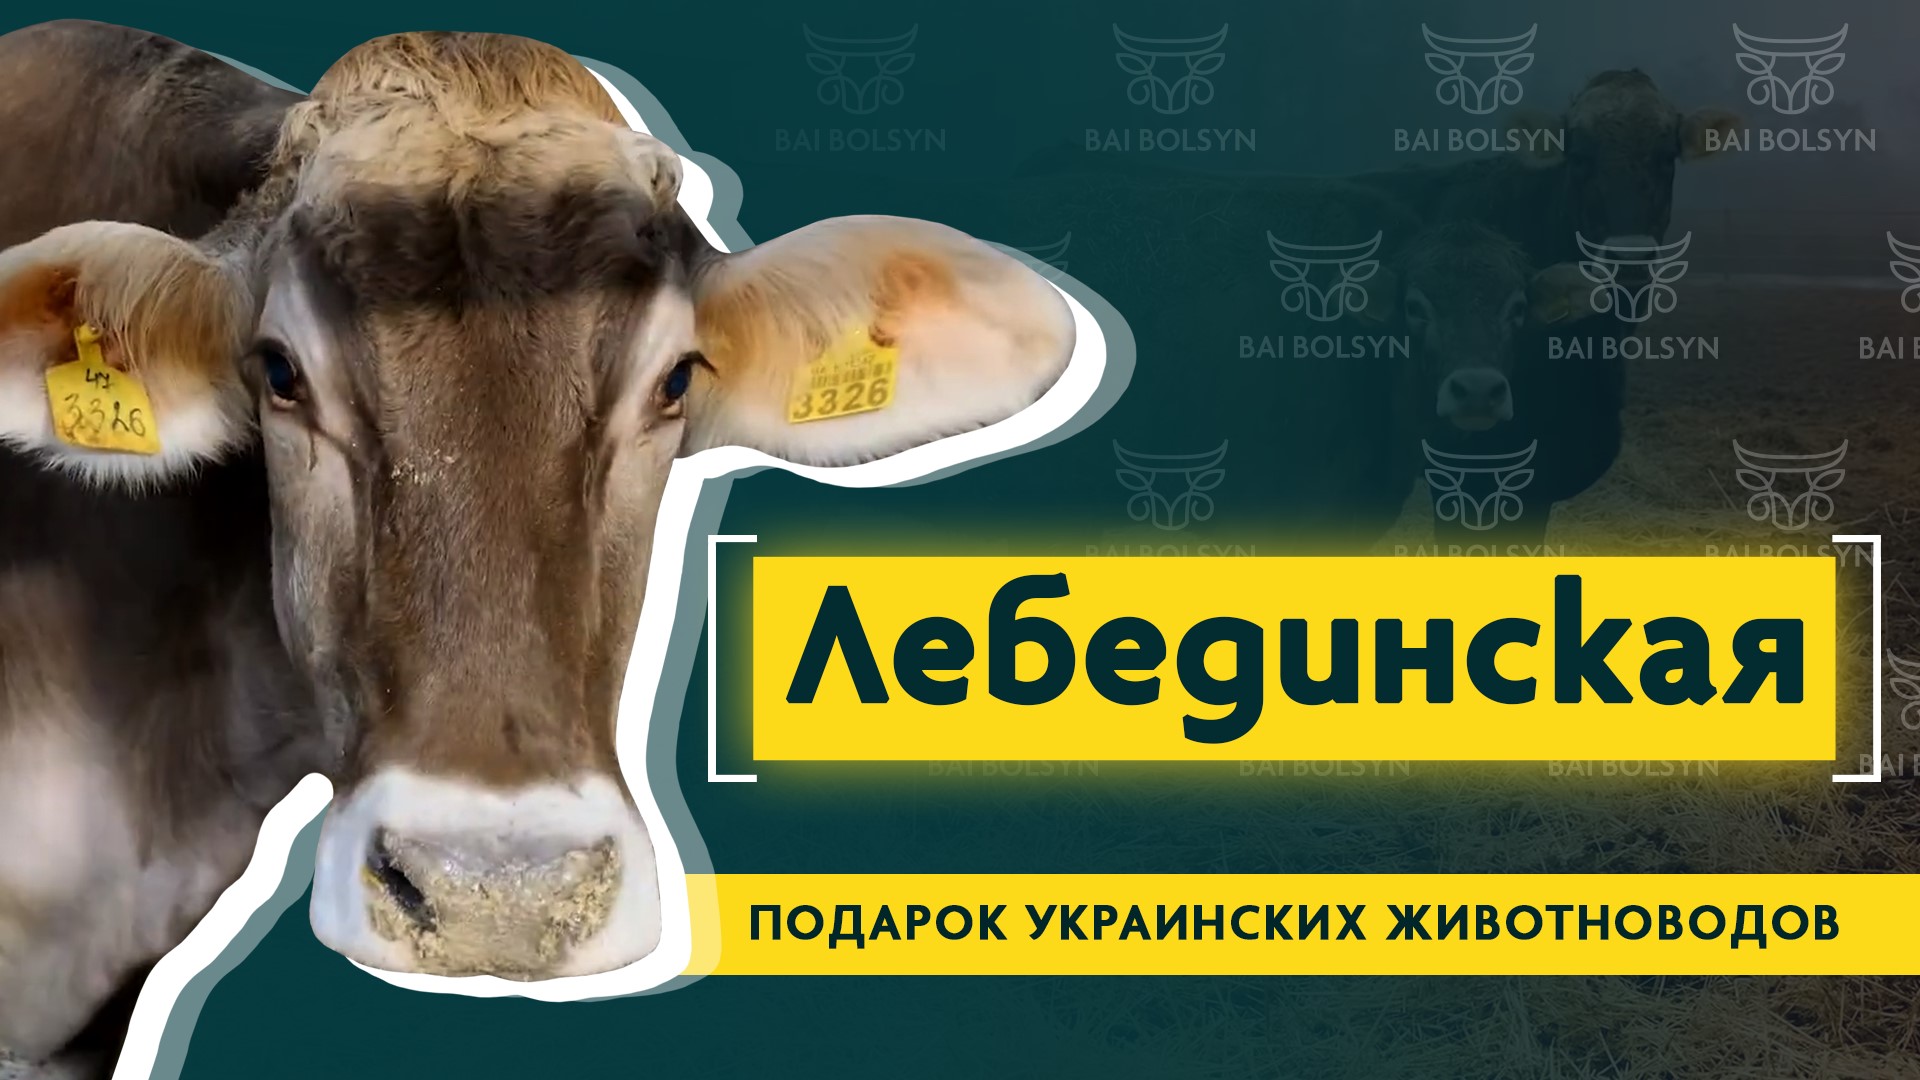 Лебединская порода КРС — выносливый и продуктивный скот из Украины, содержание и опыт